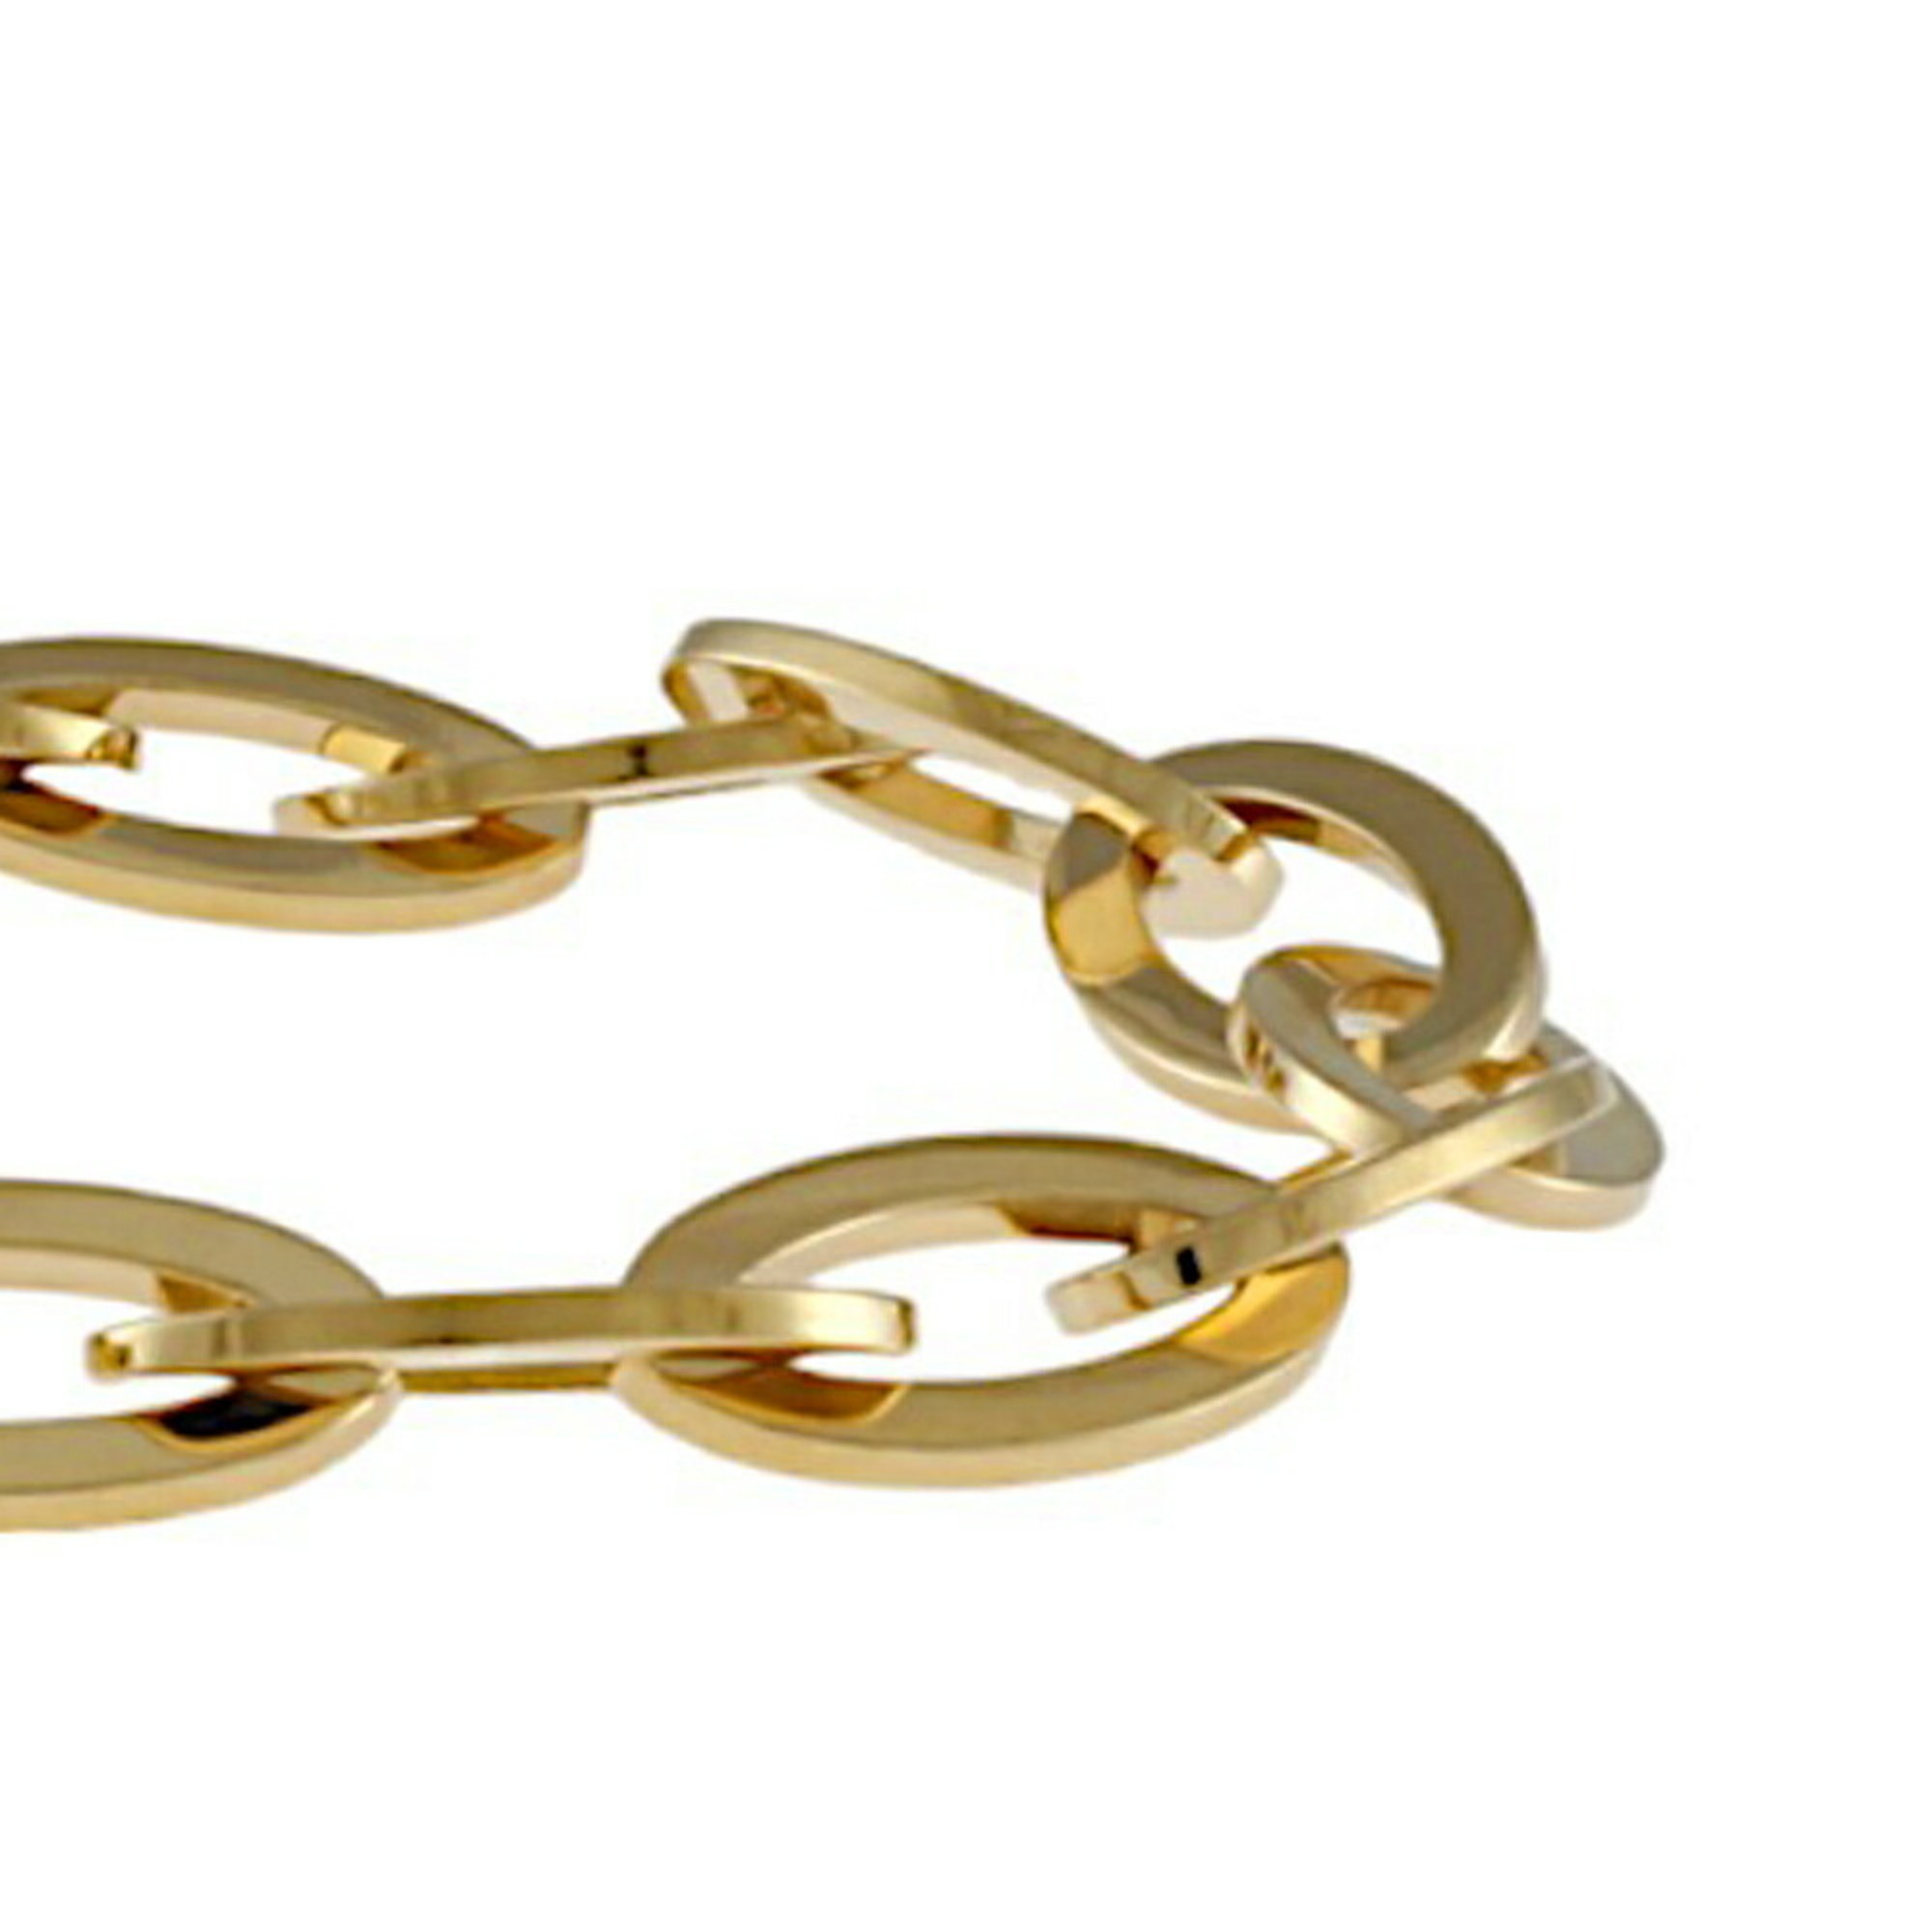 Van Cleef & Arpels Bracelet 18K Gold Women's